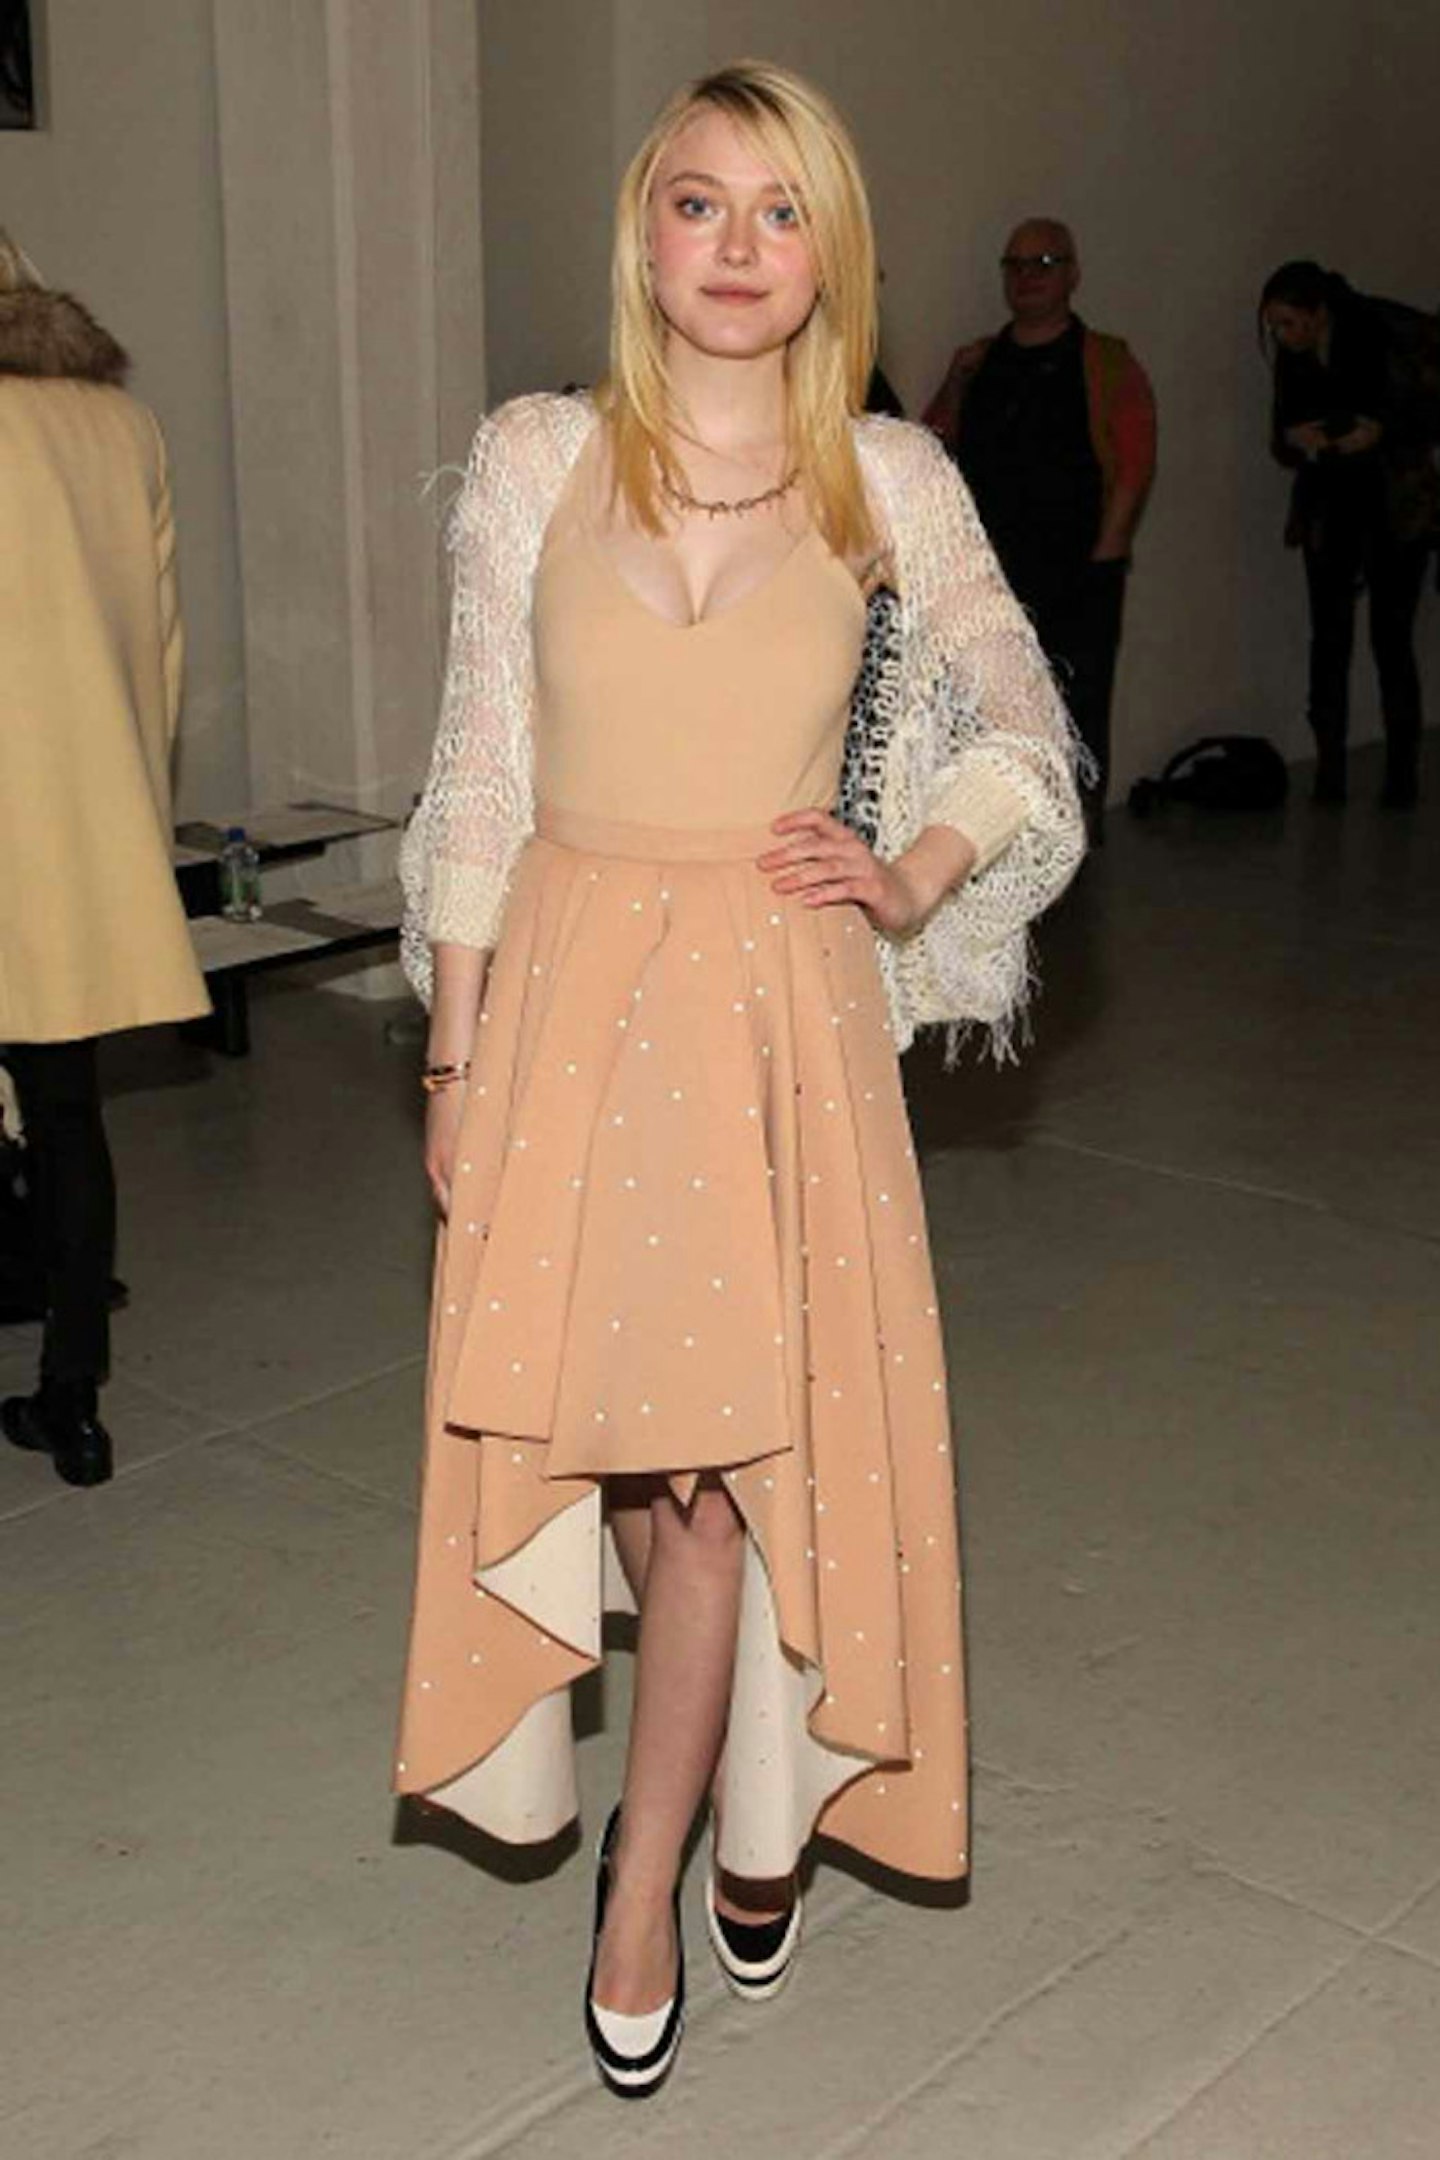 Dakota Fanning style 2014 peach polkadot dress